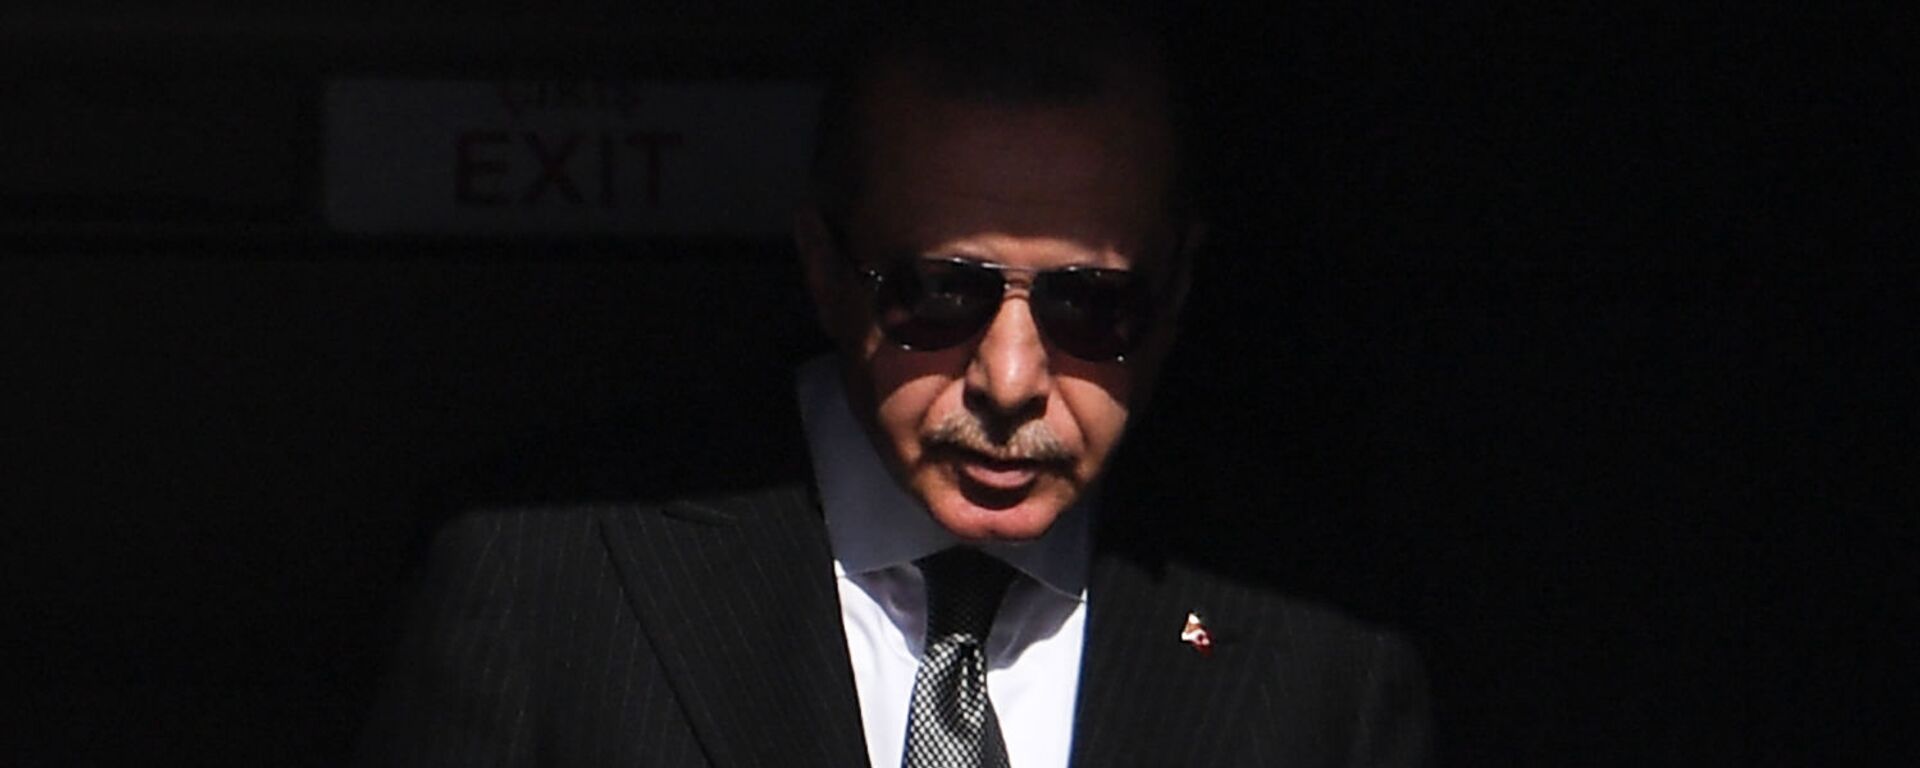 Президент Турции Реджеп Тайип Эрдоган прибывает в аэропорт Кельна (29 сентября 2018). Германия - Sputnik Армения, 1920, 14.12.2020